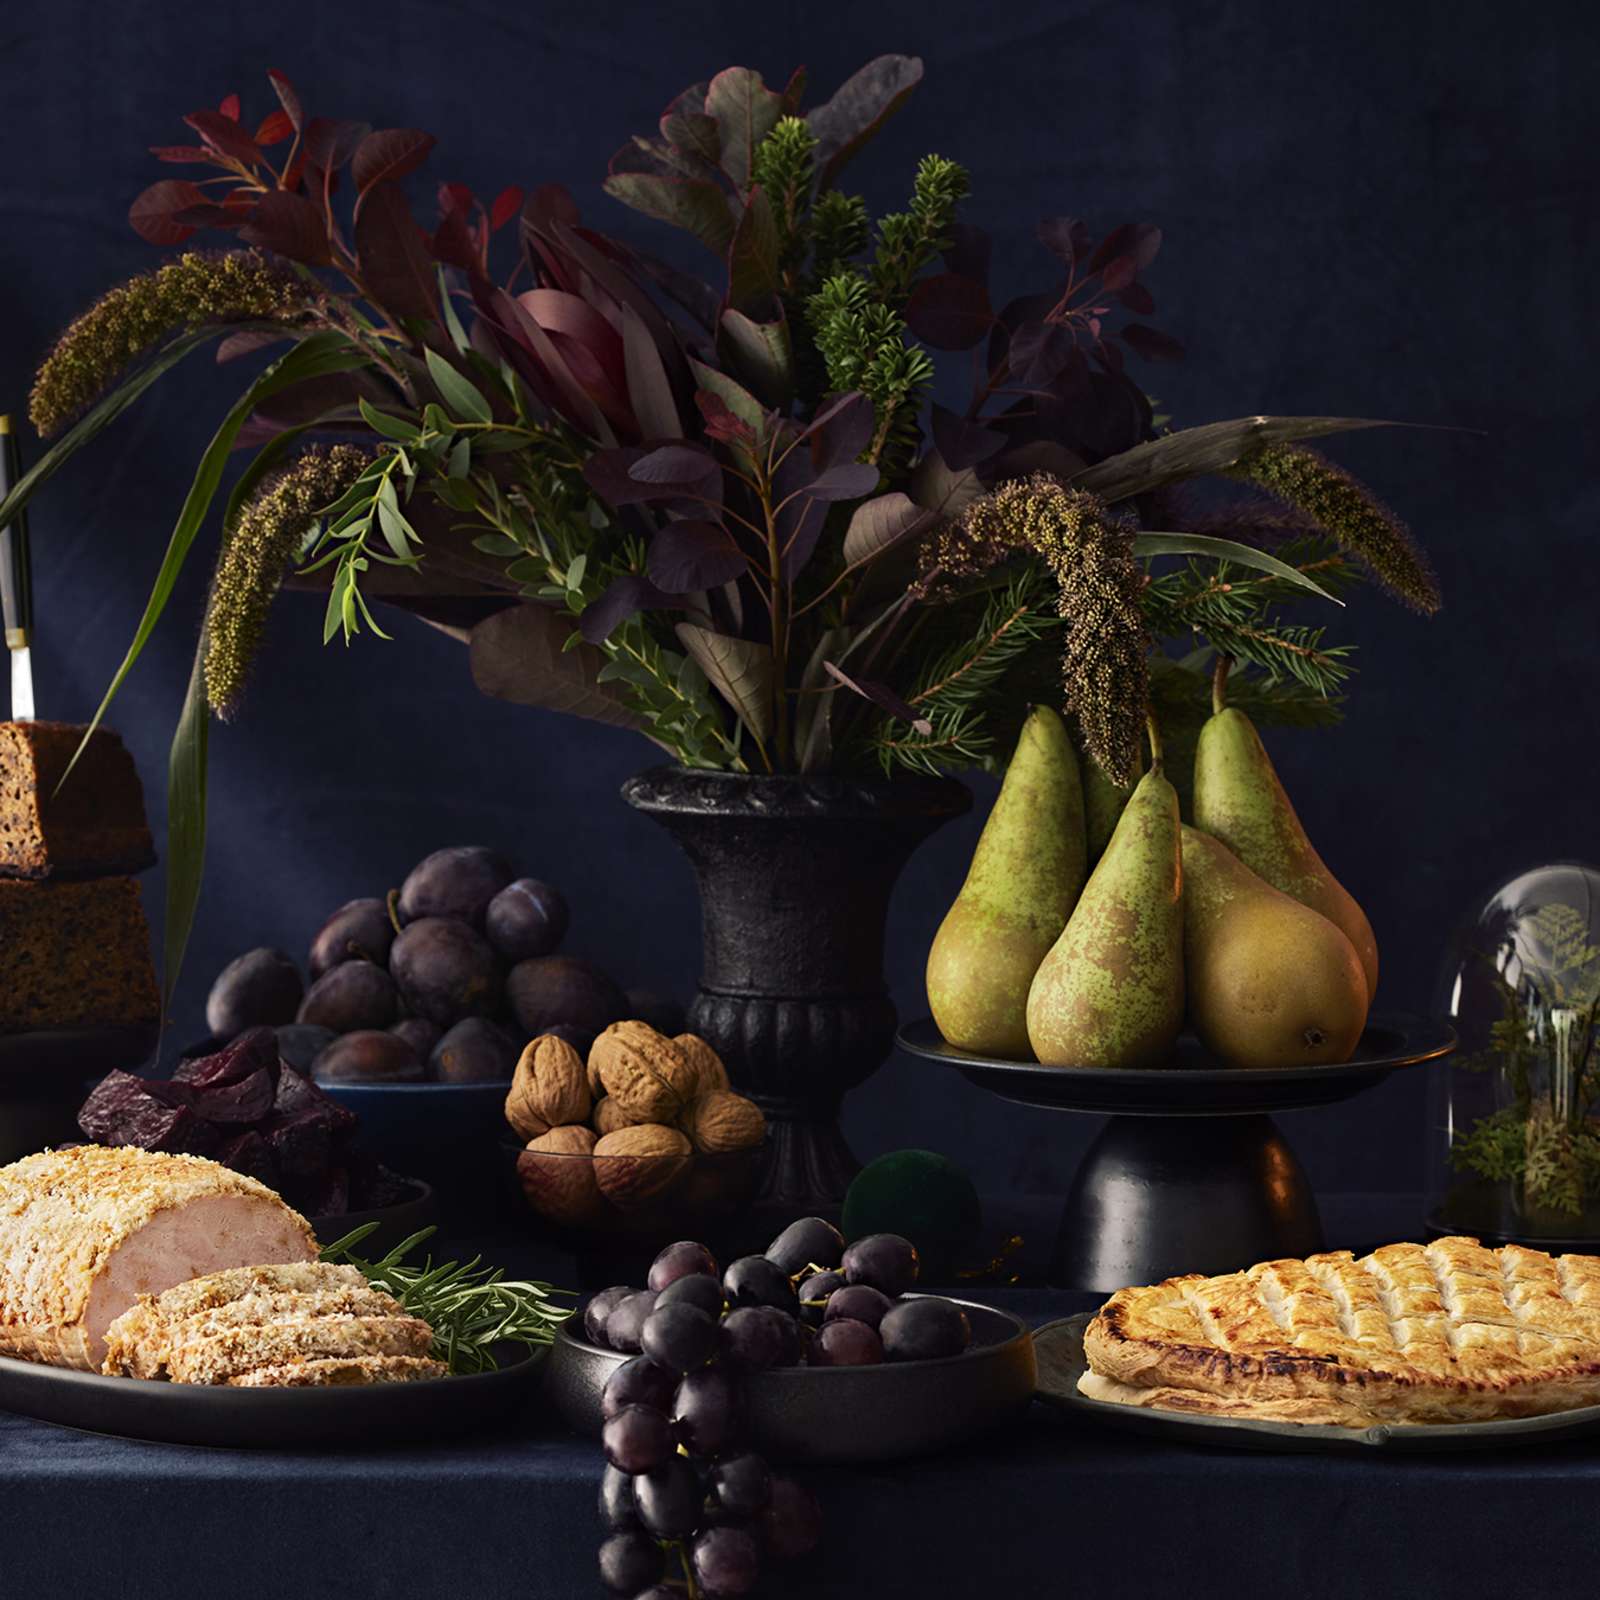 Jouluinen kattaus, jossa kalkkunarulla, vegaaninen Wellington, saaristolaisleipä, hedelmiä, pähkinöitä, juustoja, kynttilöitä ja kukka-asetelma